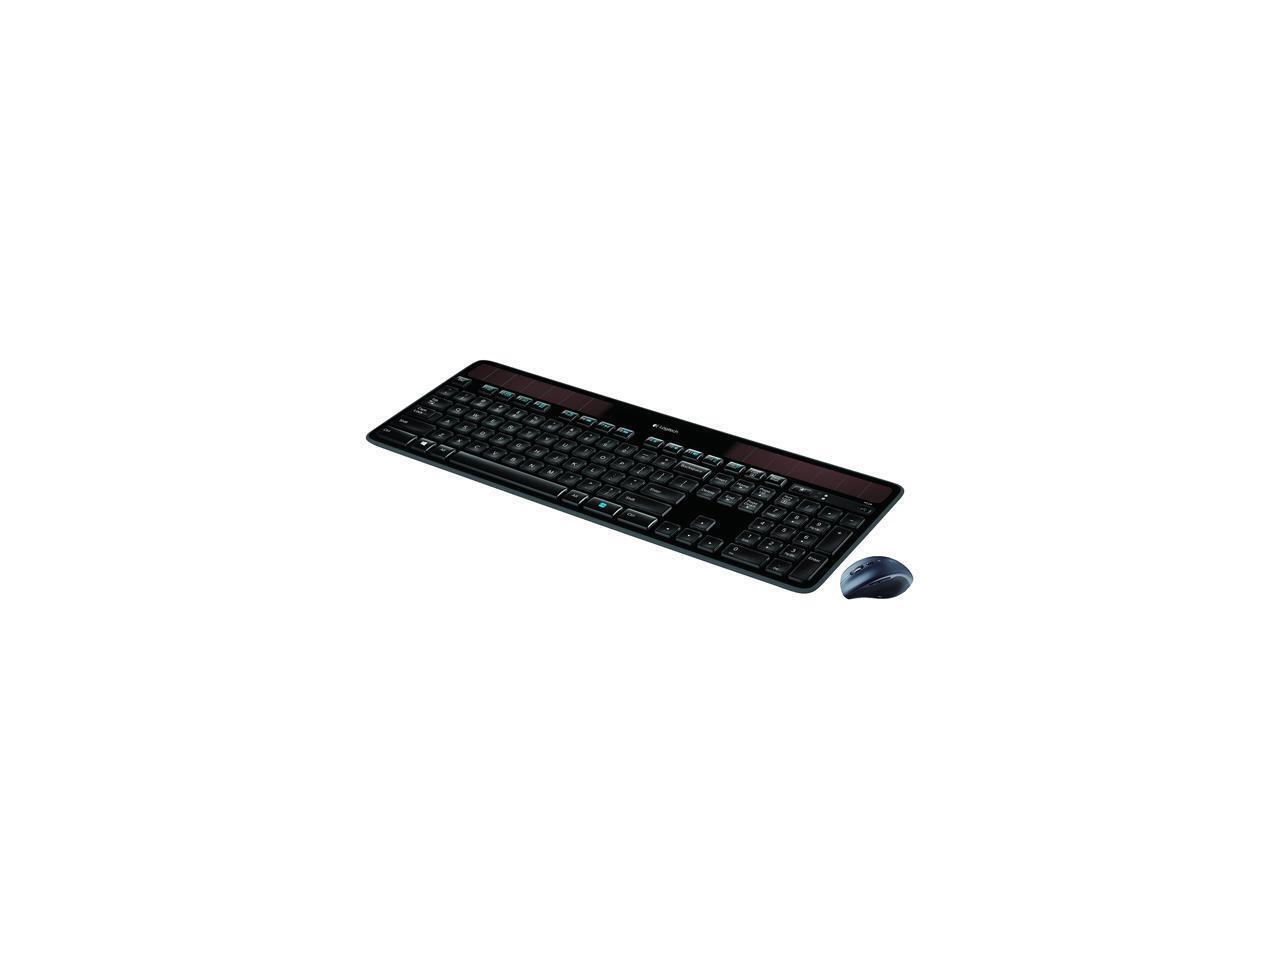 Logitech MK750 920-005002 Black USB RF Wireless Standard Keyboards